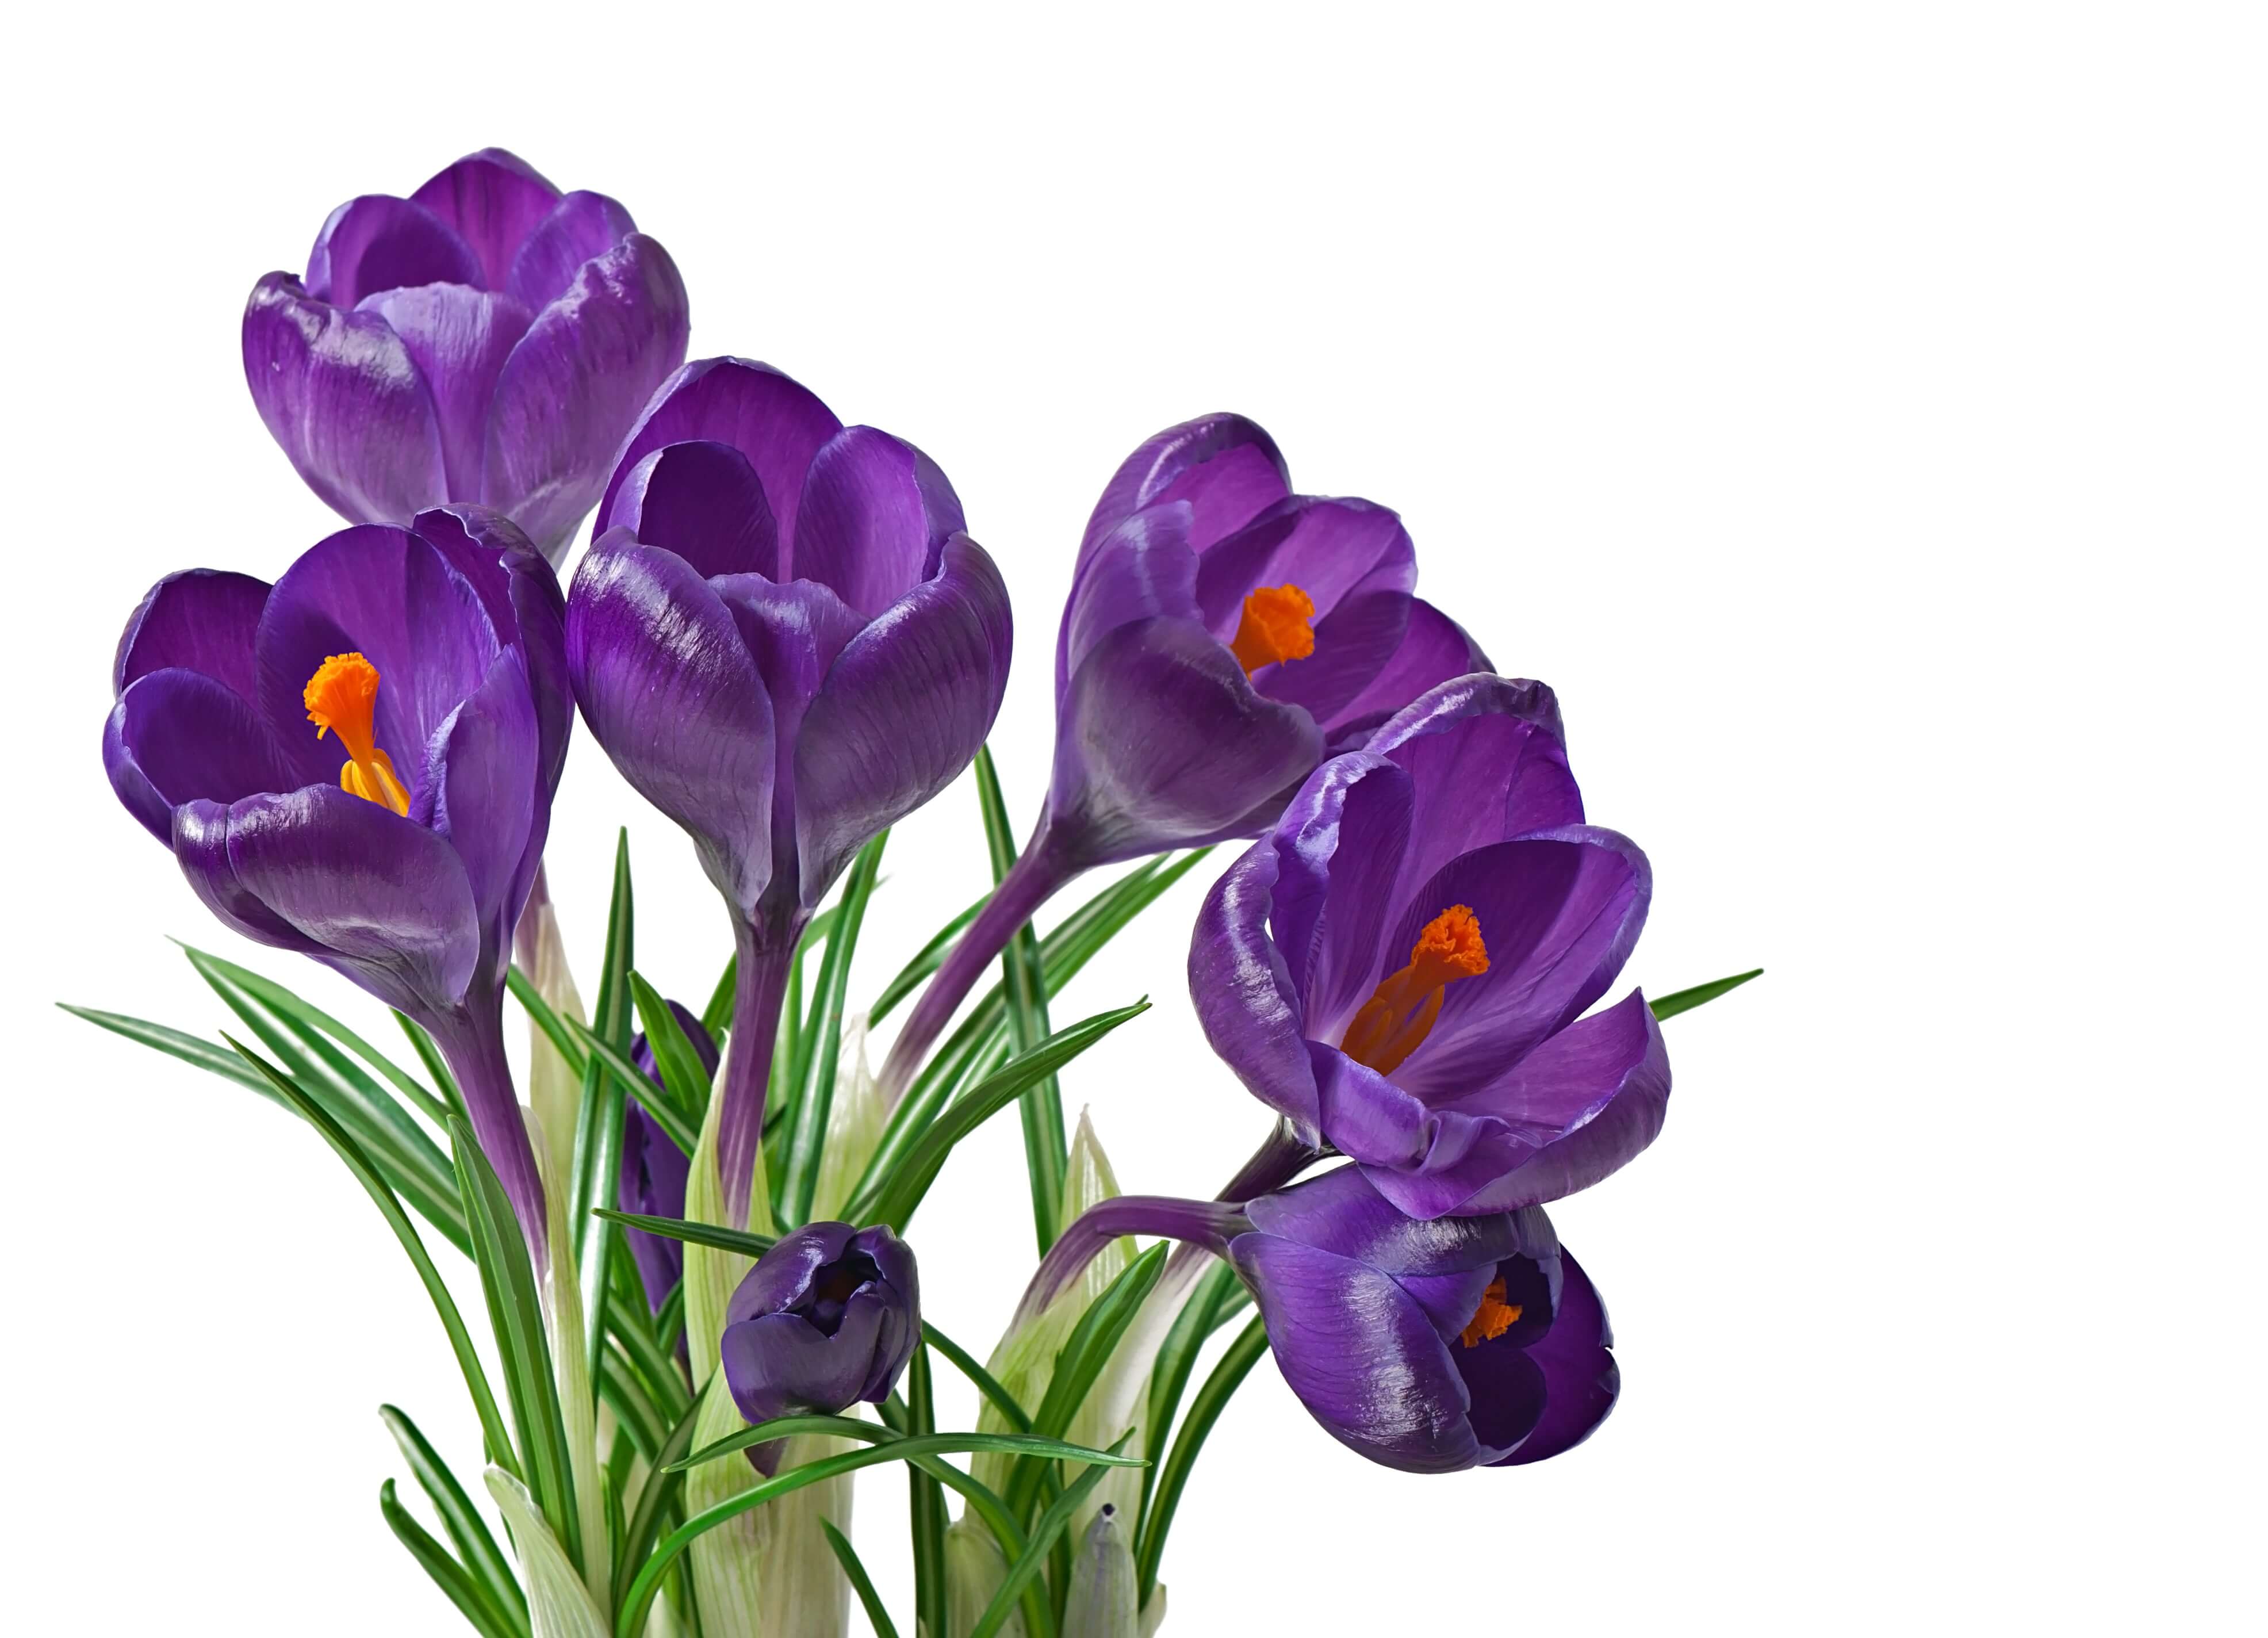 Top 10 Early-Blooming Flowers in Spring Season